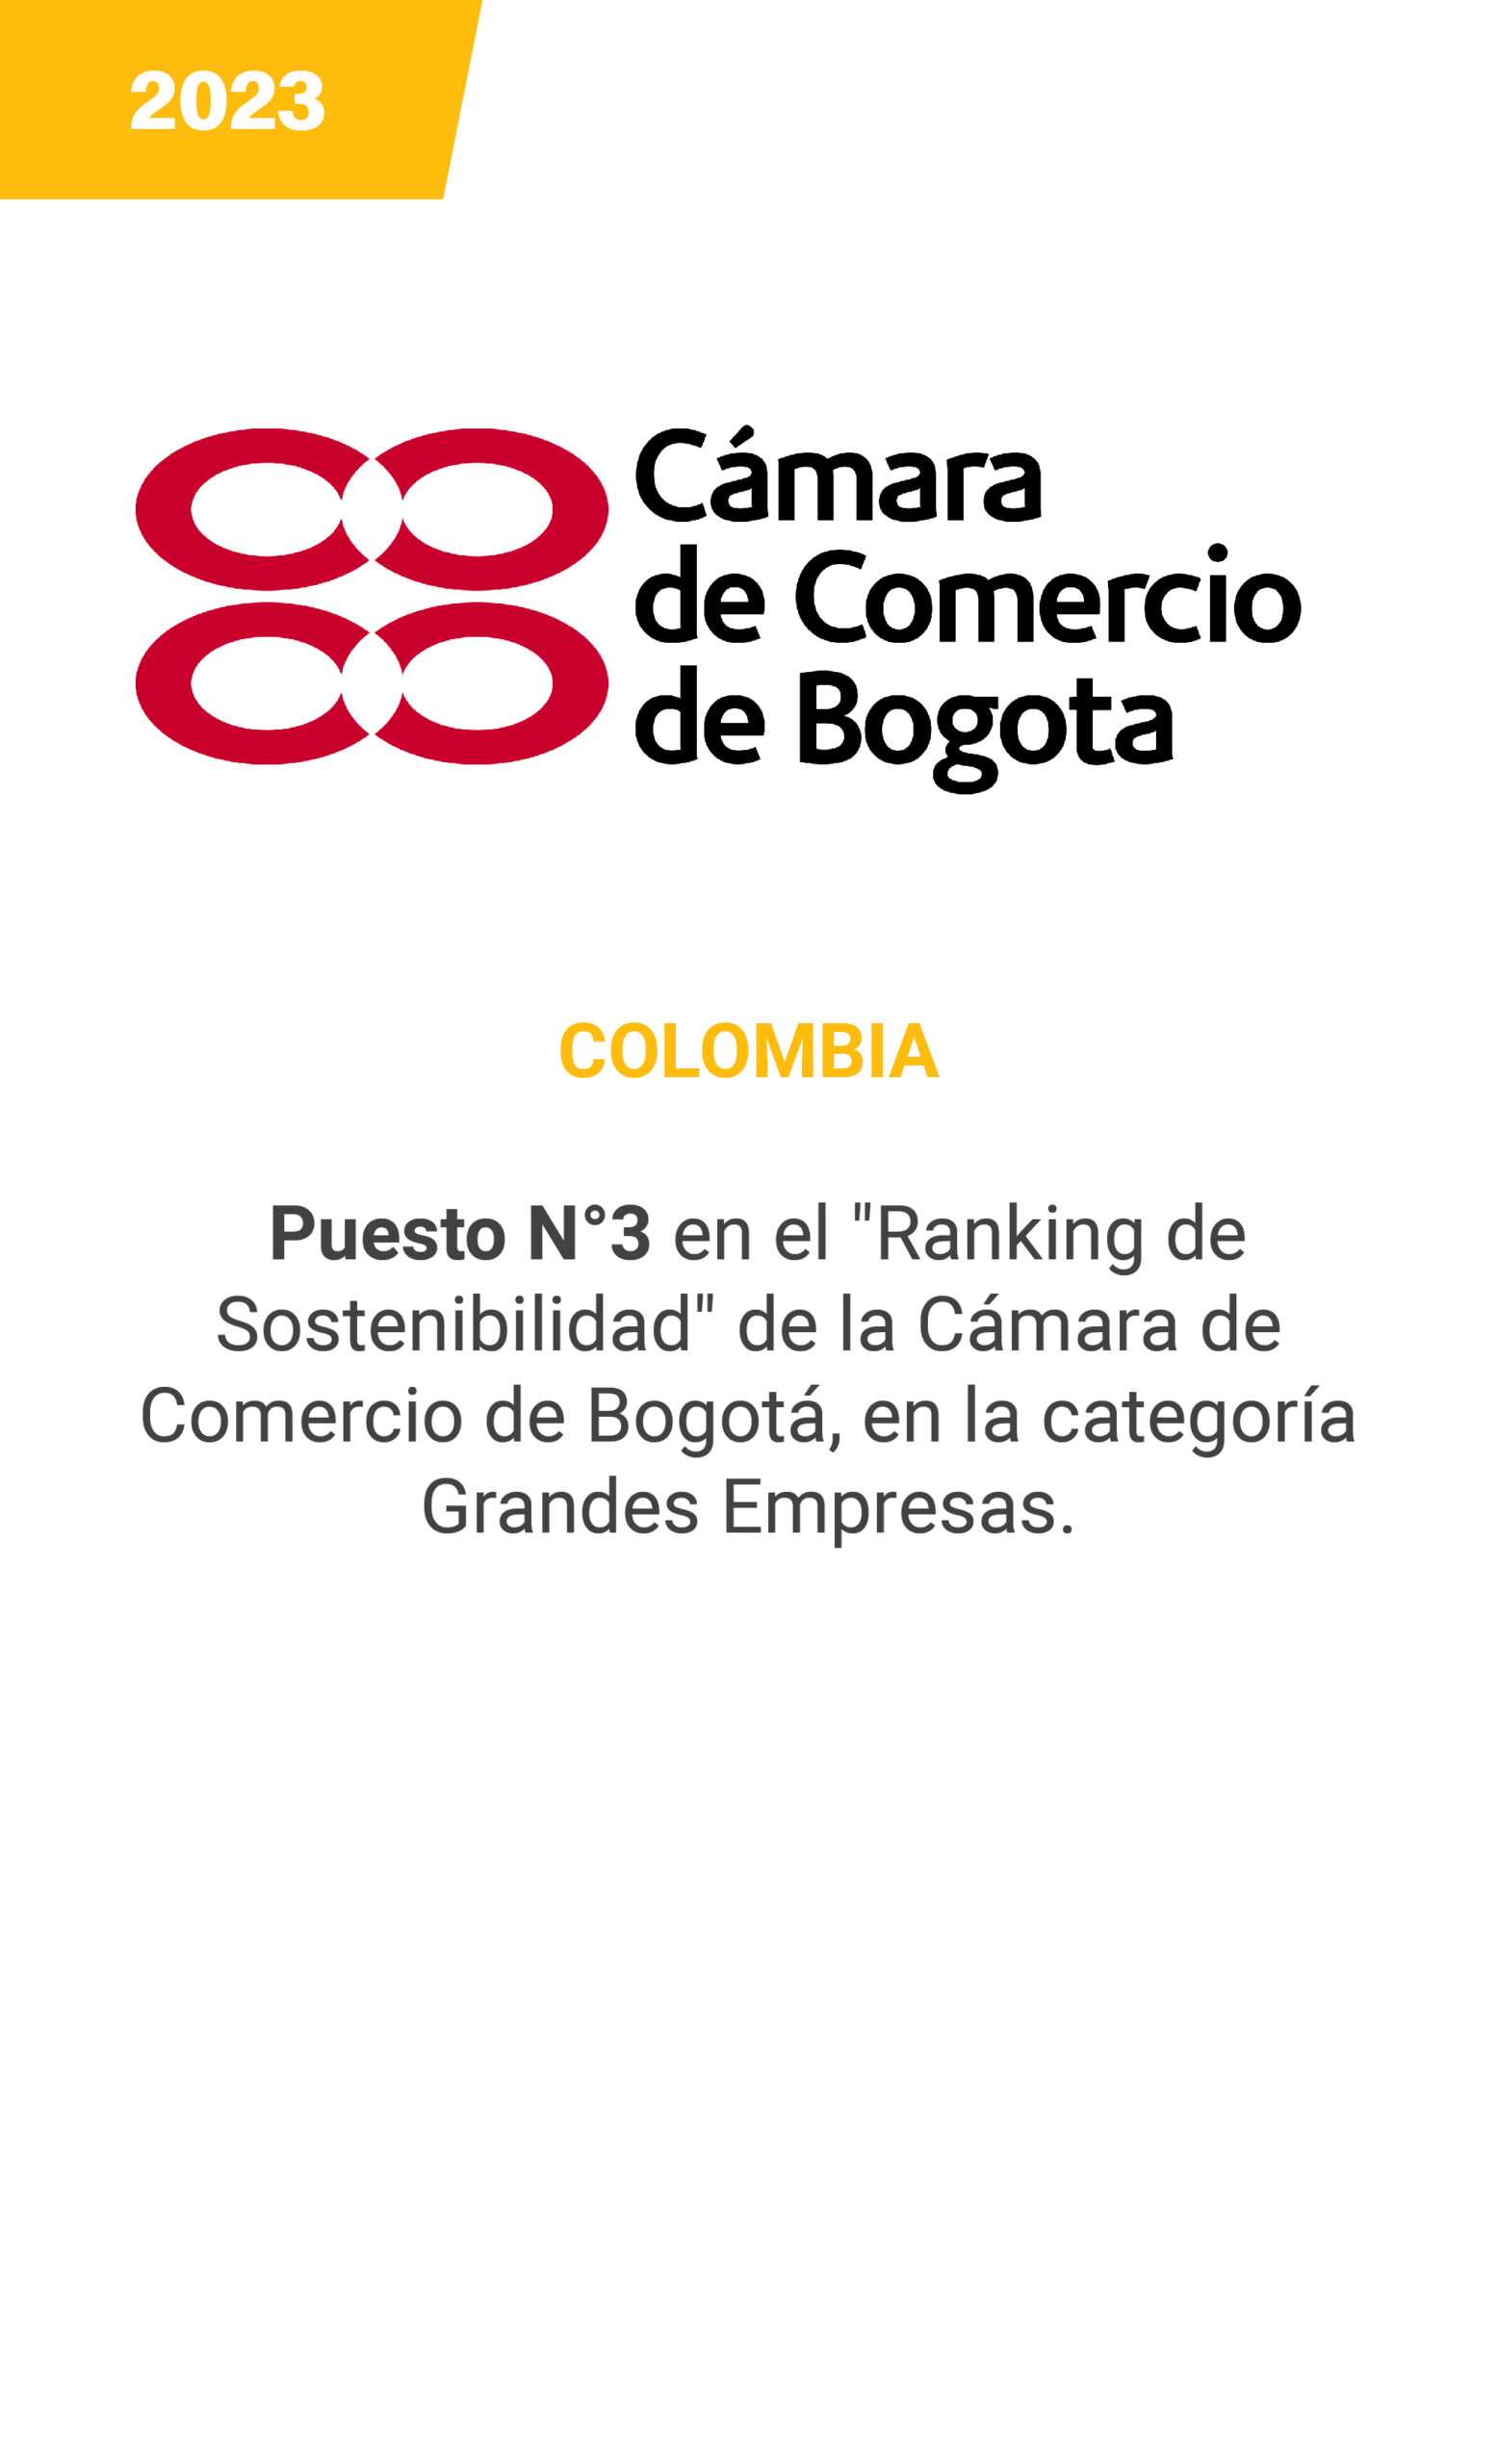 Camara de Comercio de Bogota - mobile